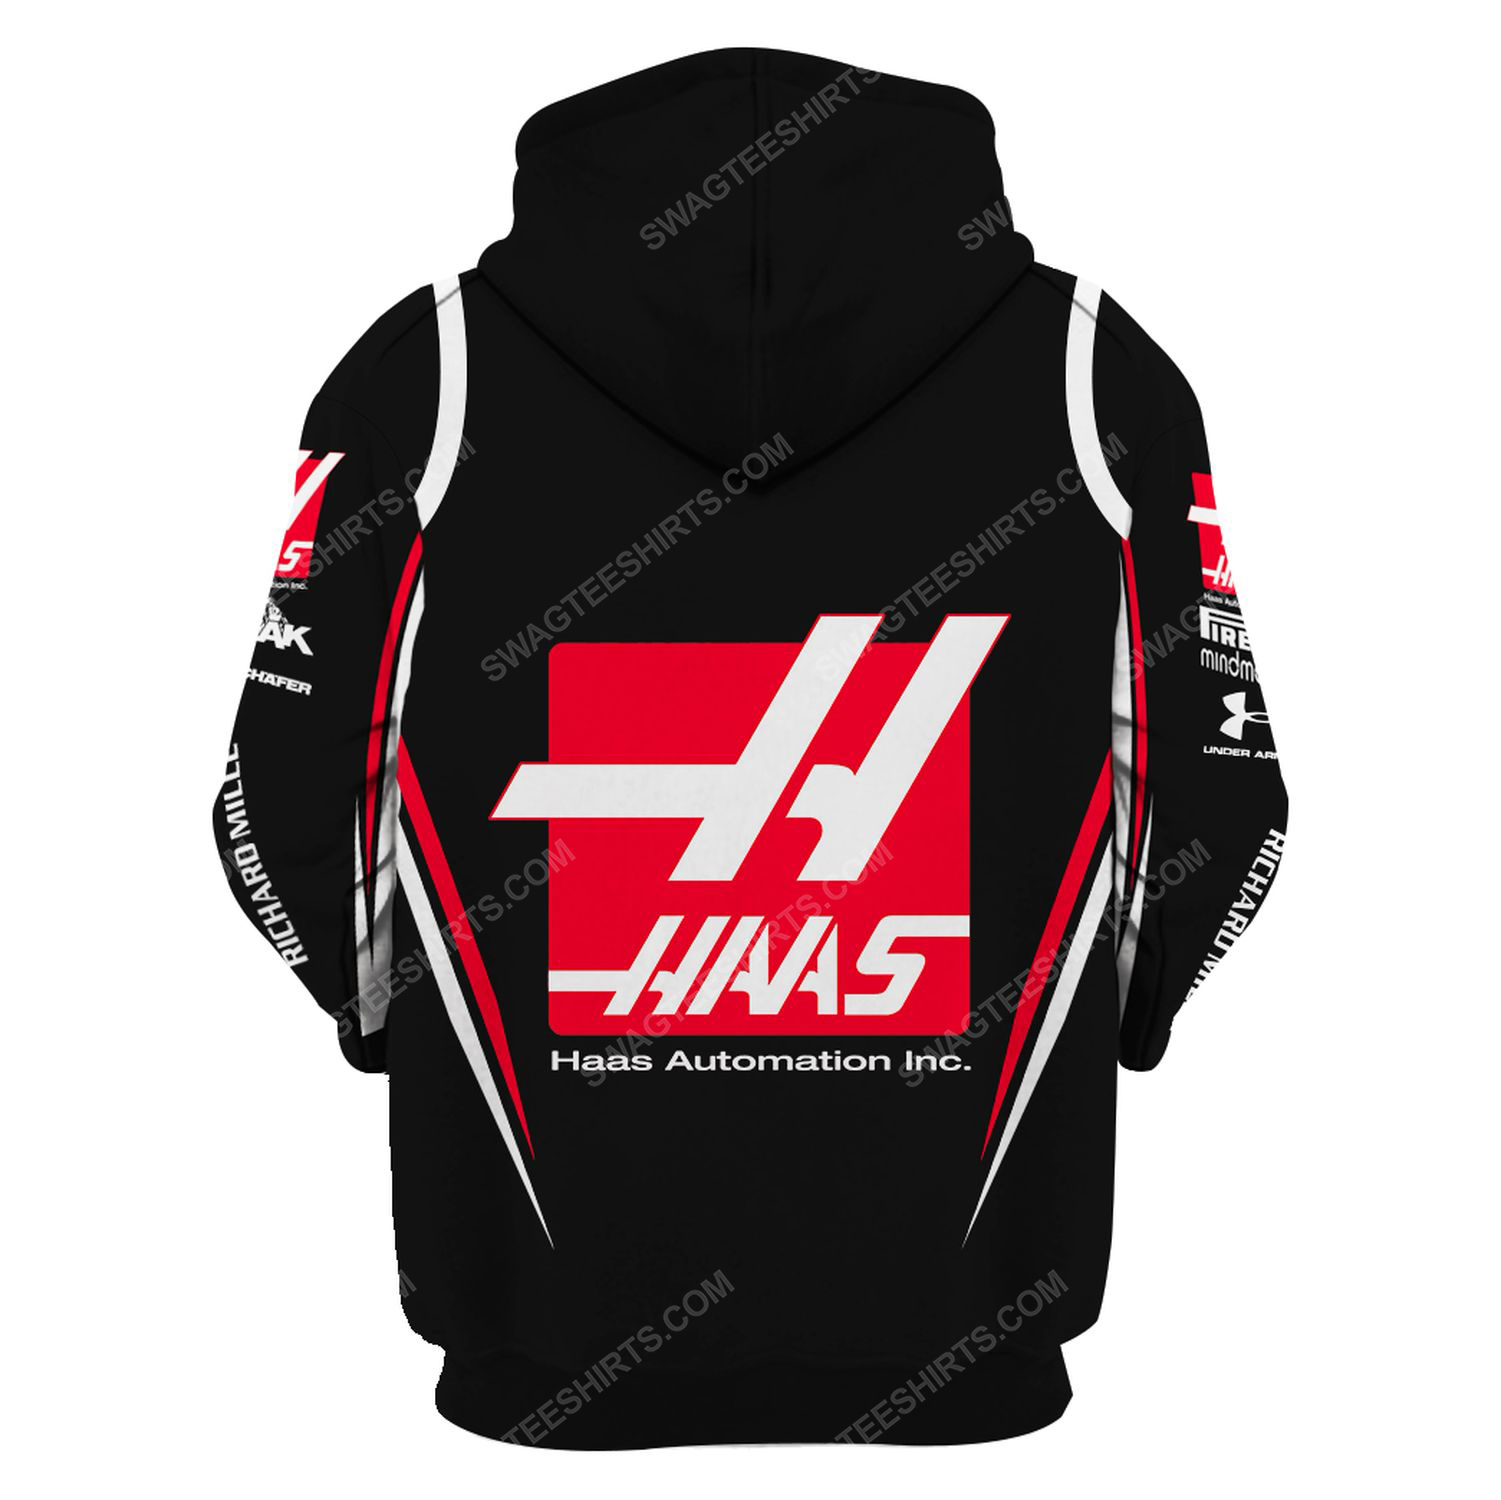 Haas automation inc racing team motorsport full printing hoodie - back